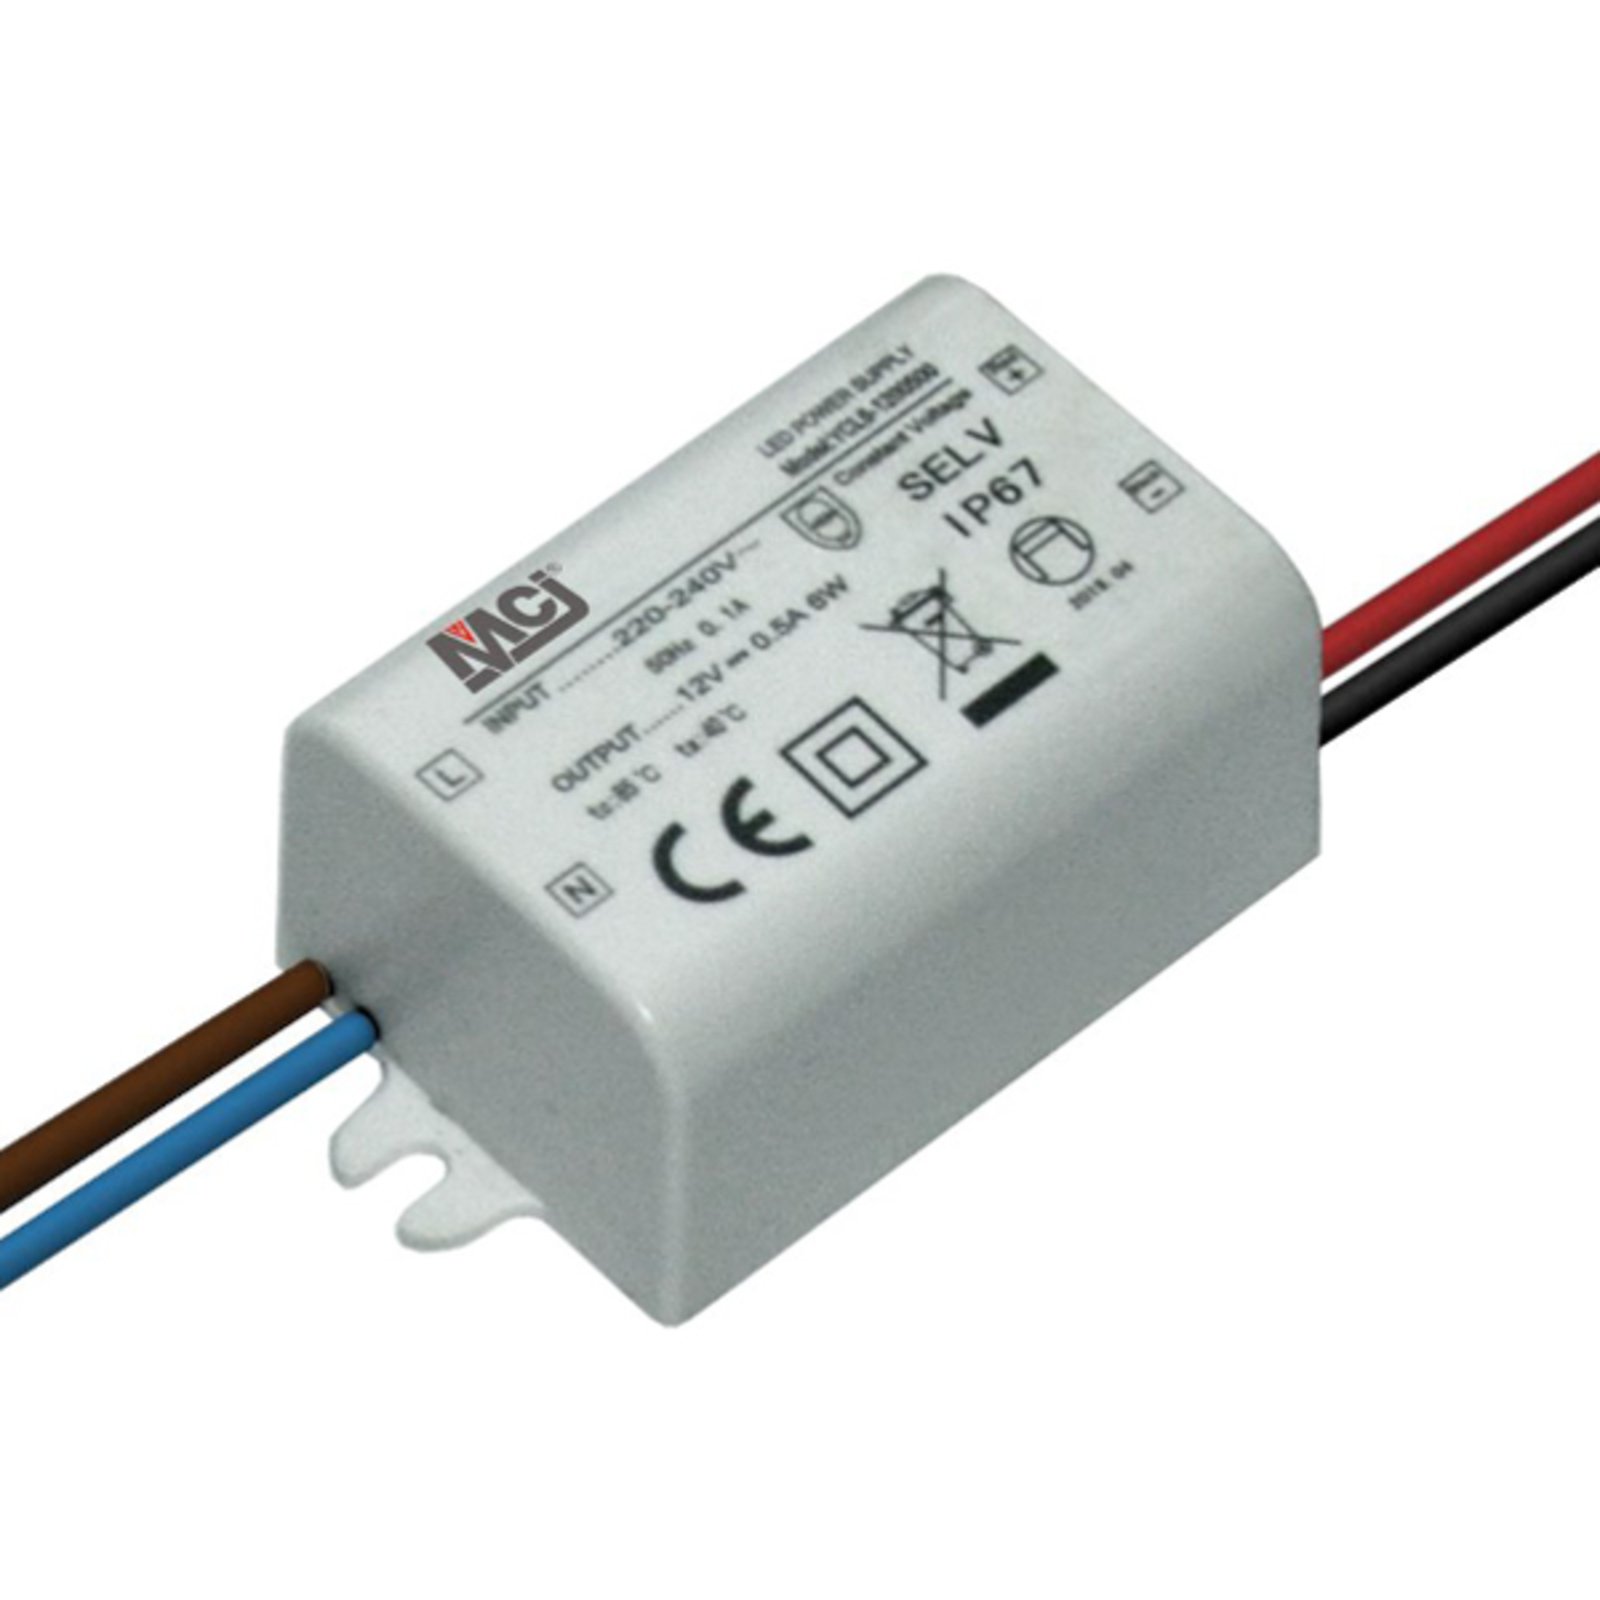 LED power supply ZY-LED 6W67